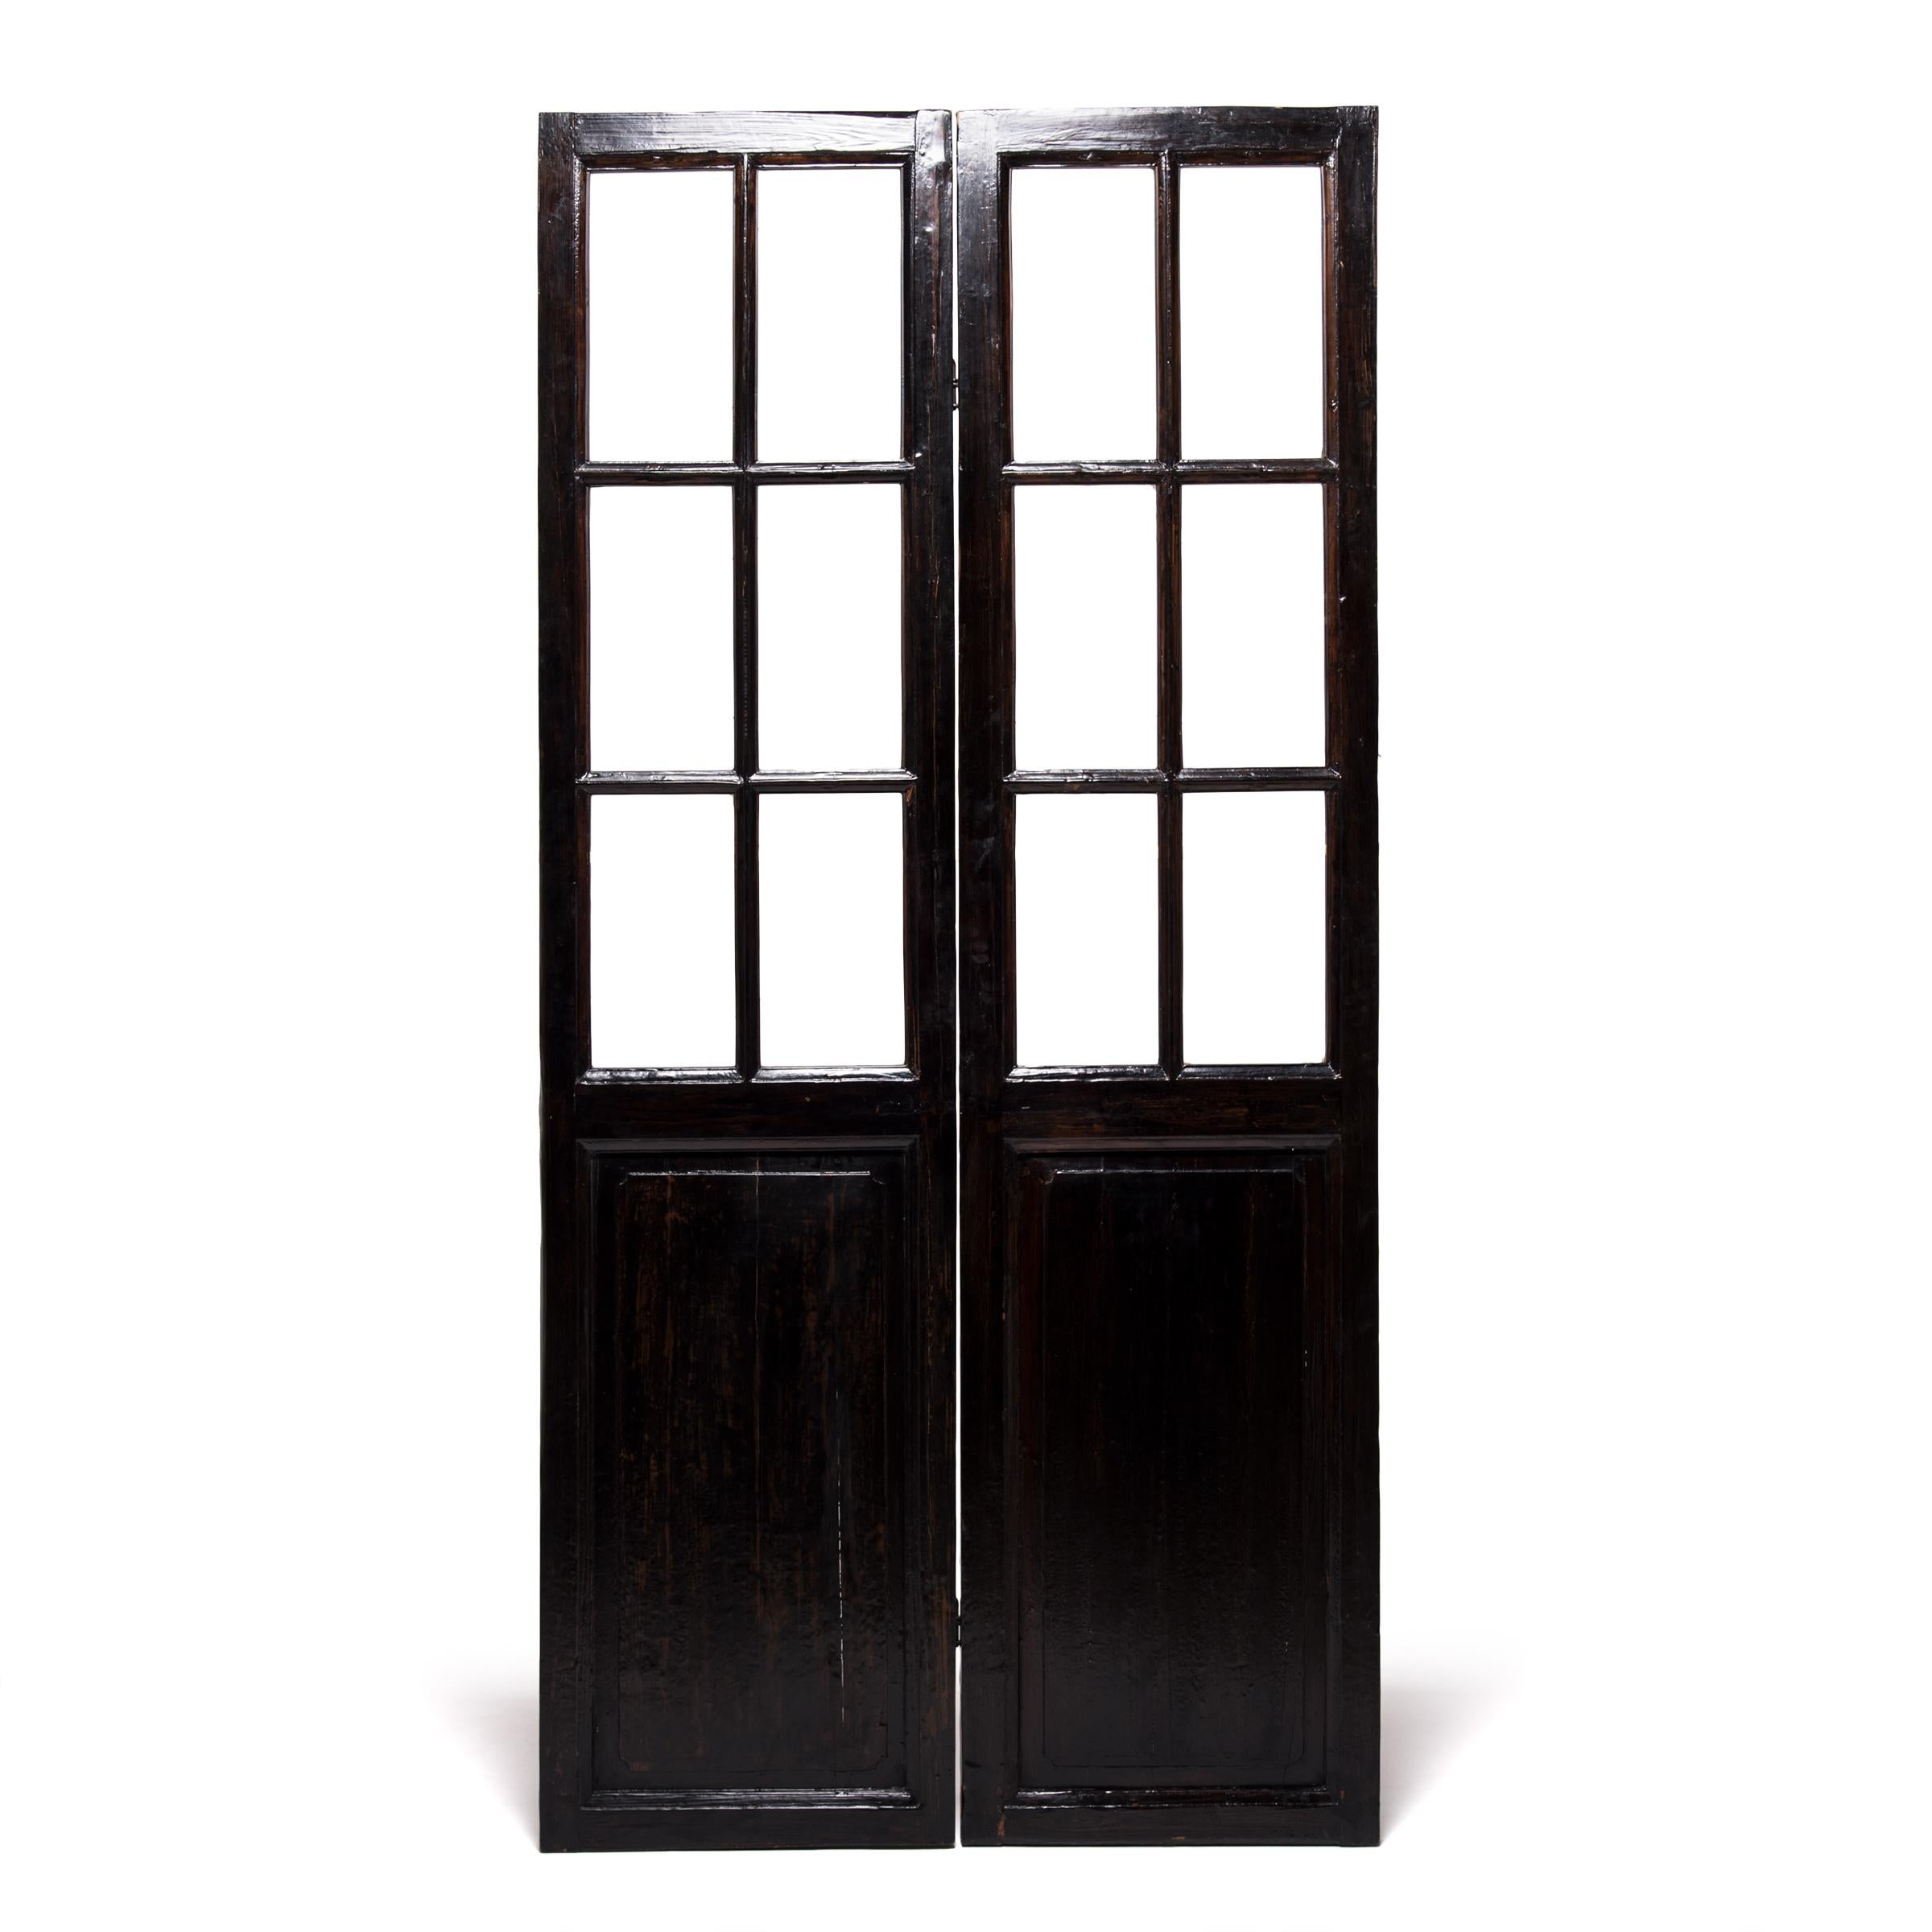 Diese handgeschnitzten Türen, ein Markenzeichen der Hausarchitektur der Qing-Dynastie, wurden ursprünglich in einem provinziellen Hofhaus verwendet, um Licht und Luft in einen Raum zu lassen und gleichzeitig die Privatsphäre zu wahren. Der Rahmen